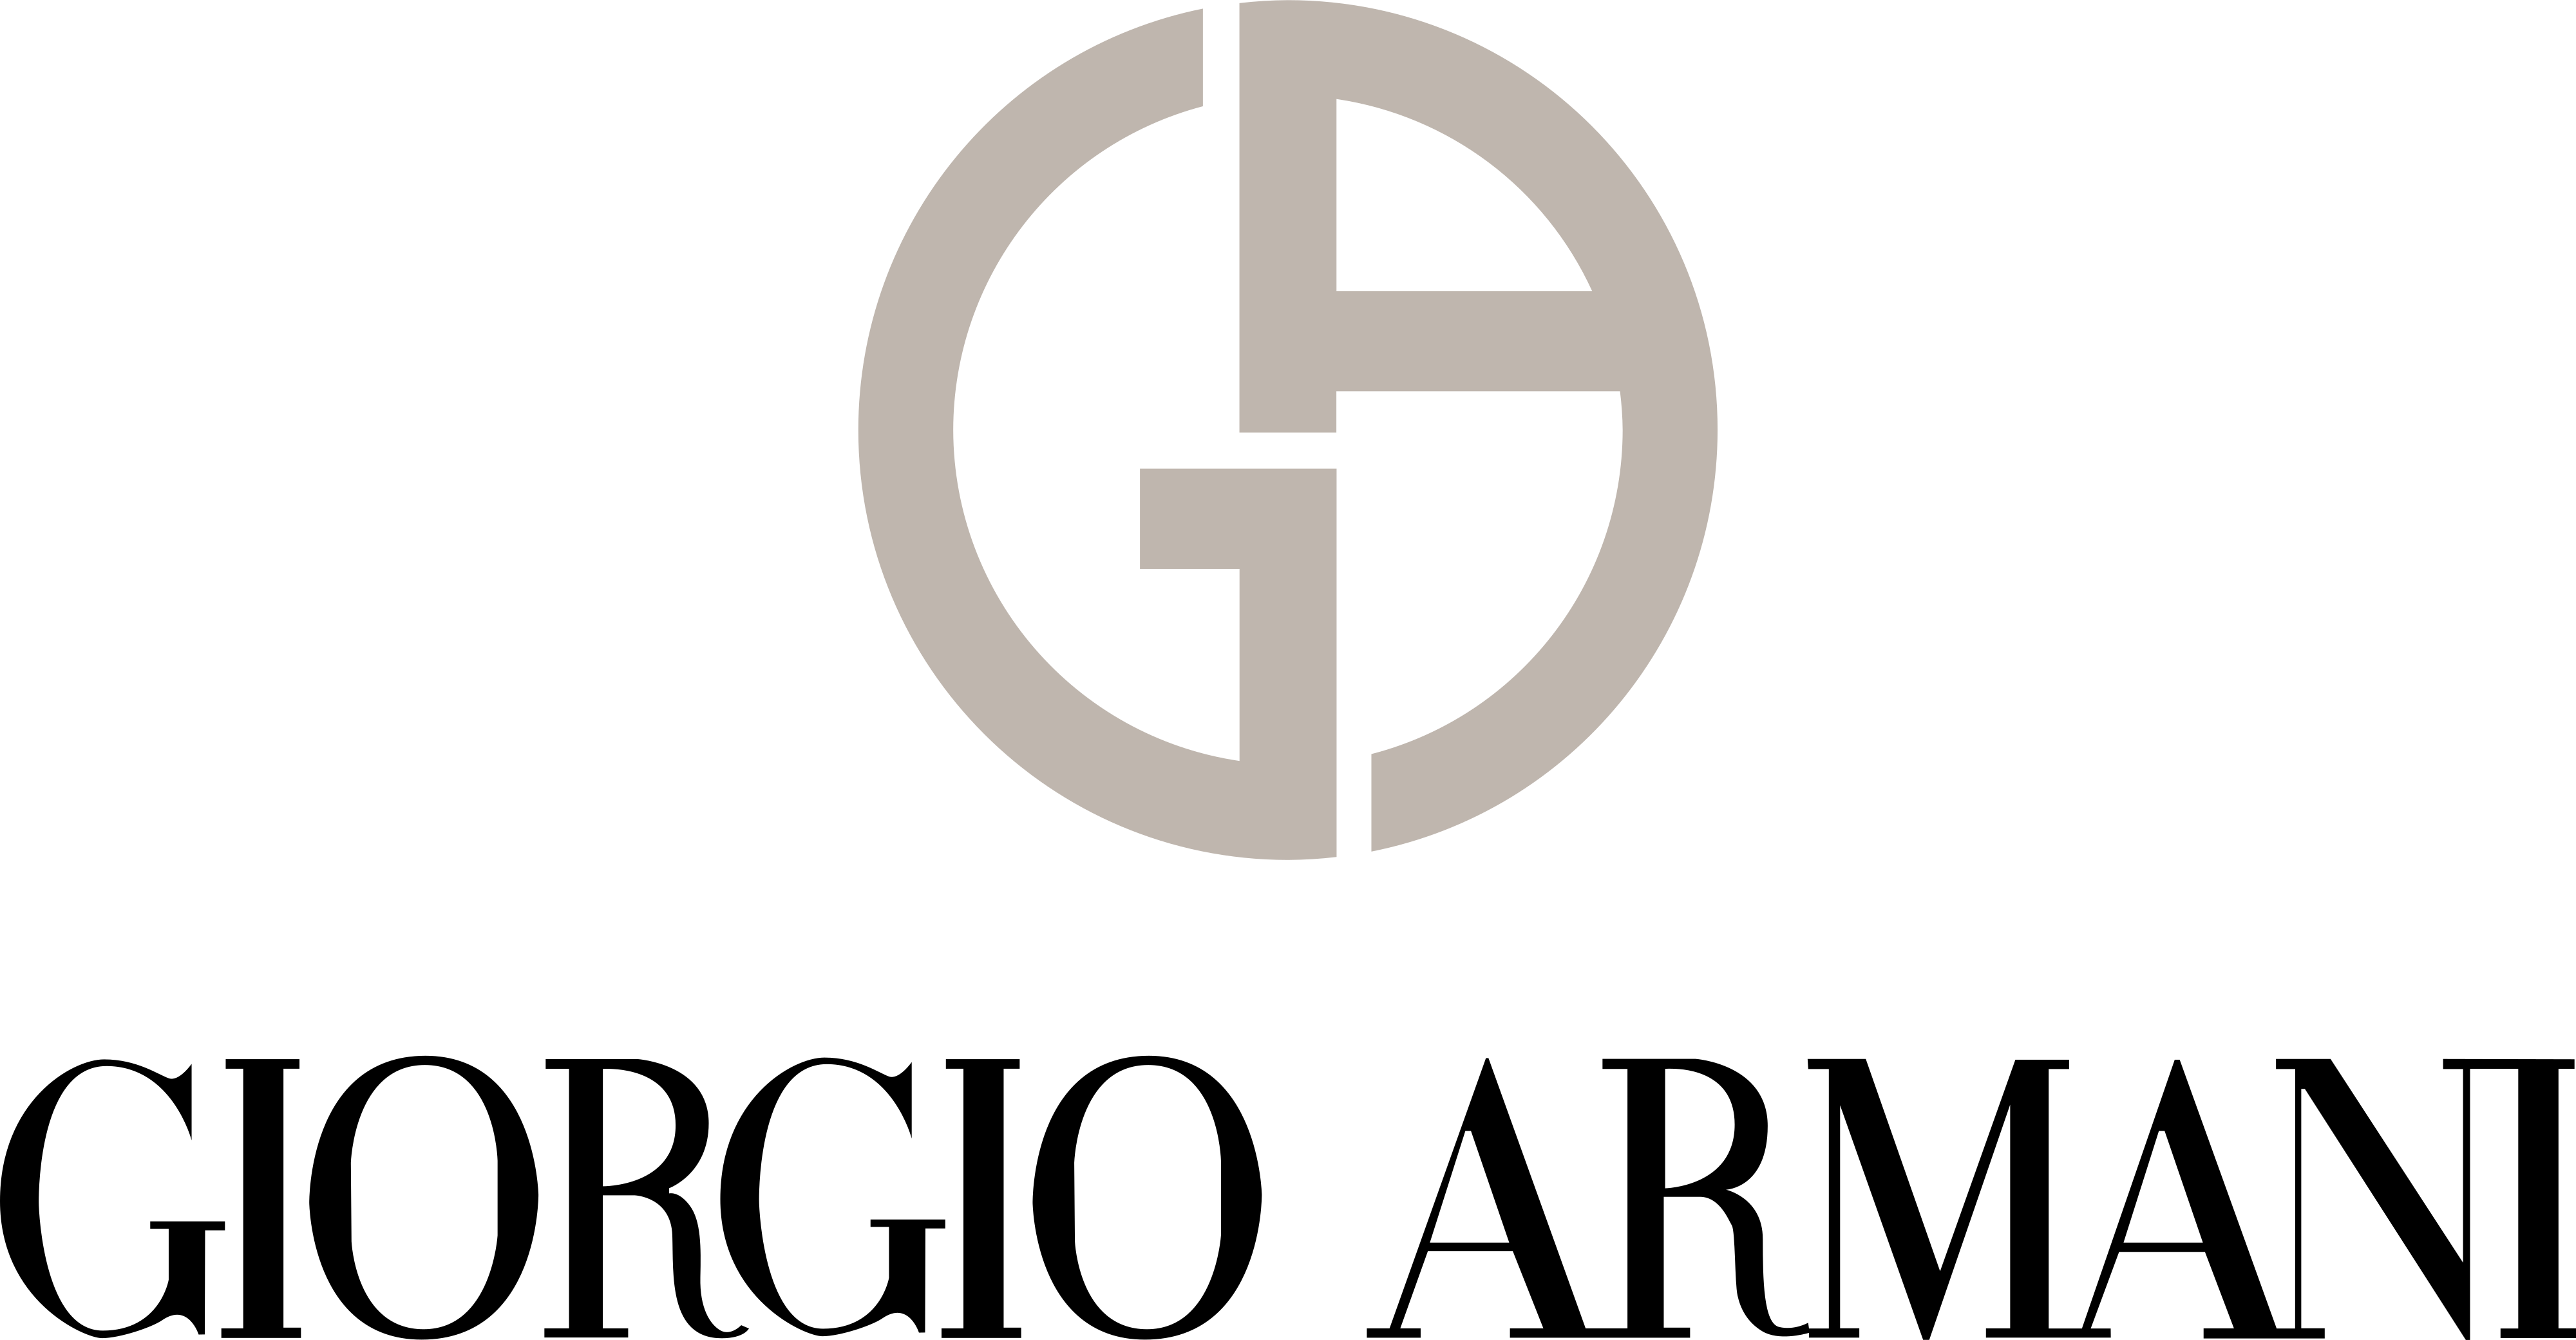 Giorgio Armani logo - download.